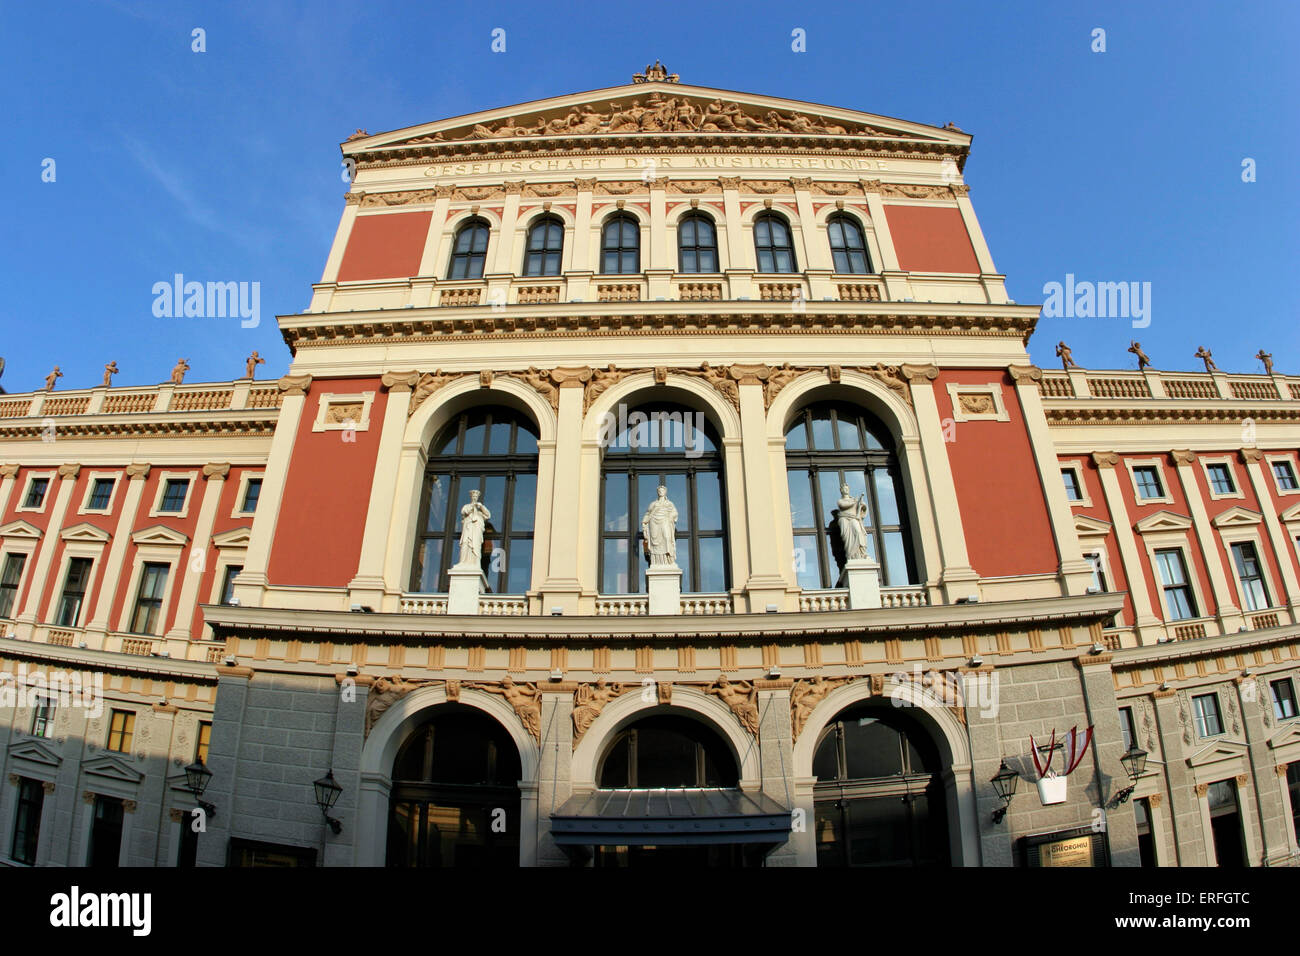 La facciata della sala concerti Musikverein di Vienna, Austria. Aperto il 6 gennaio 1870. Home della Orchestra Filarmonica di Vienna. Foto Stock